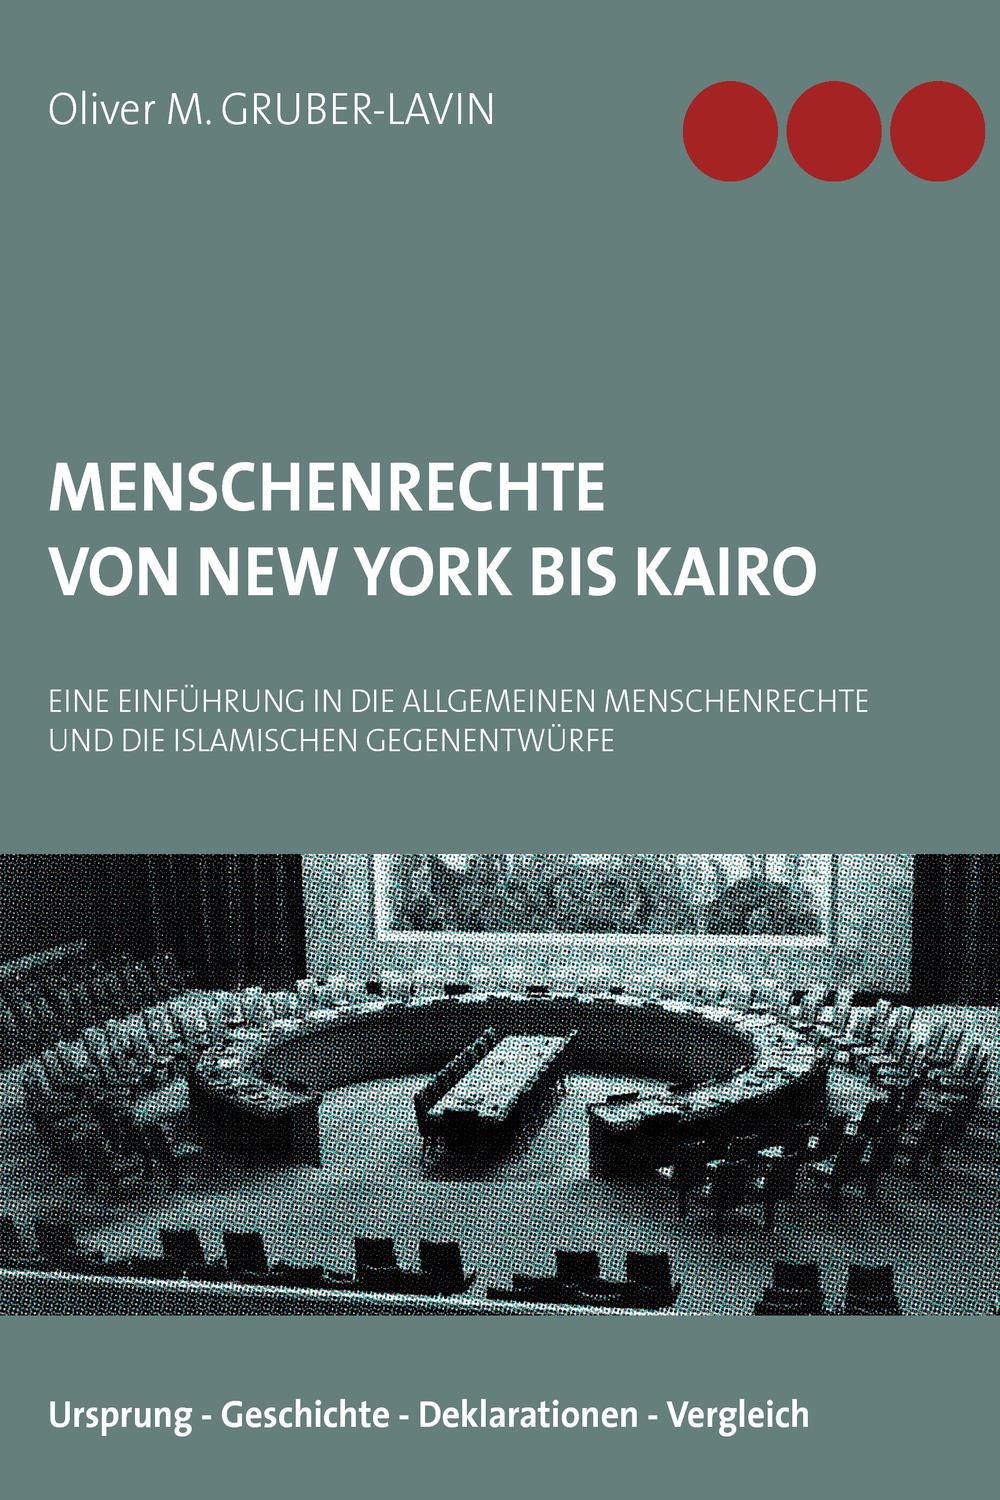 Menschenrechte von New York bis Kairo - Oliver M. Gruber-Lavin